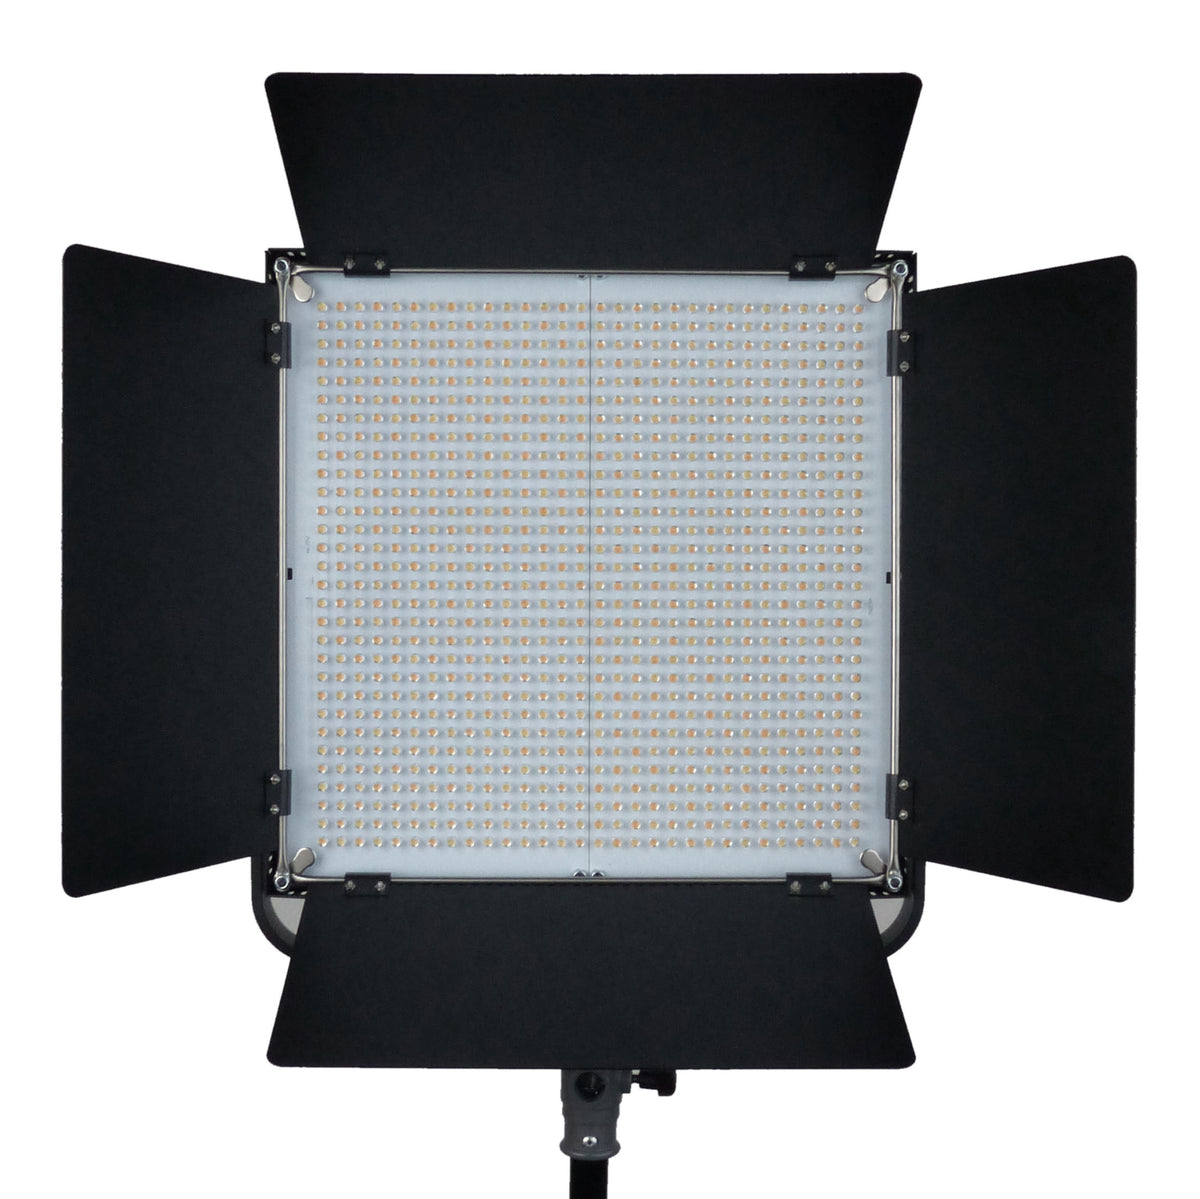 ALZO 12W (100W) Joyous Light® Dimmable LED Full Spectrum PAR30 Spot Li -  ALZO Digital